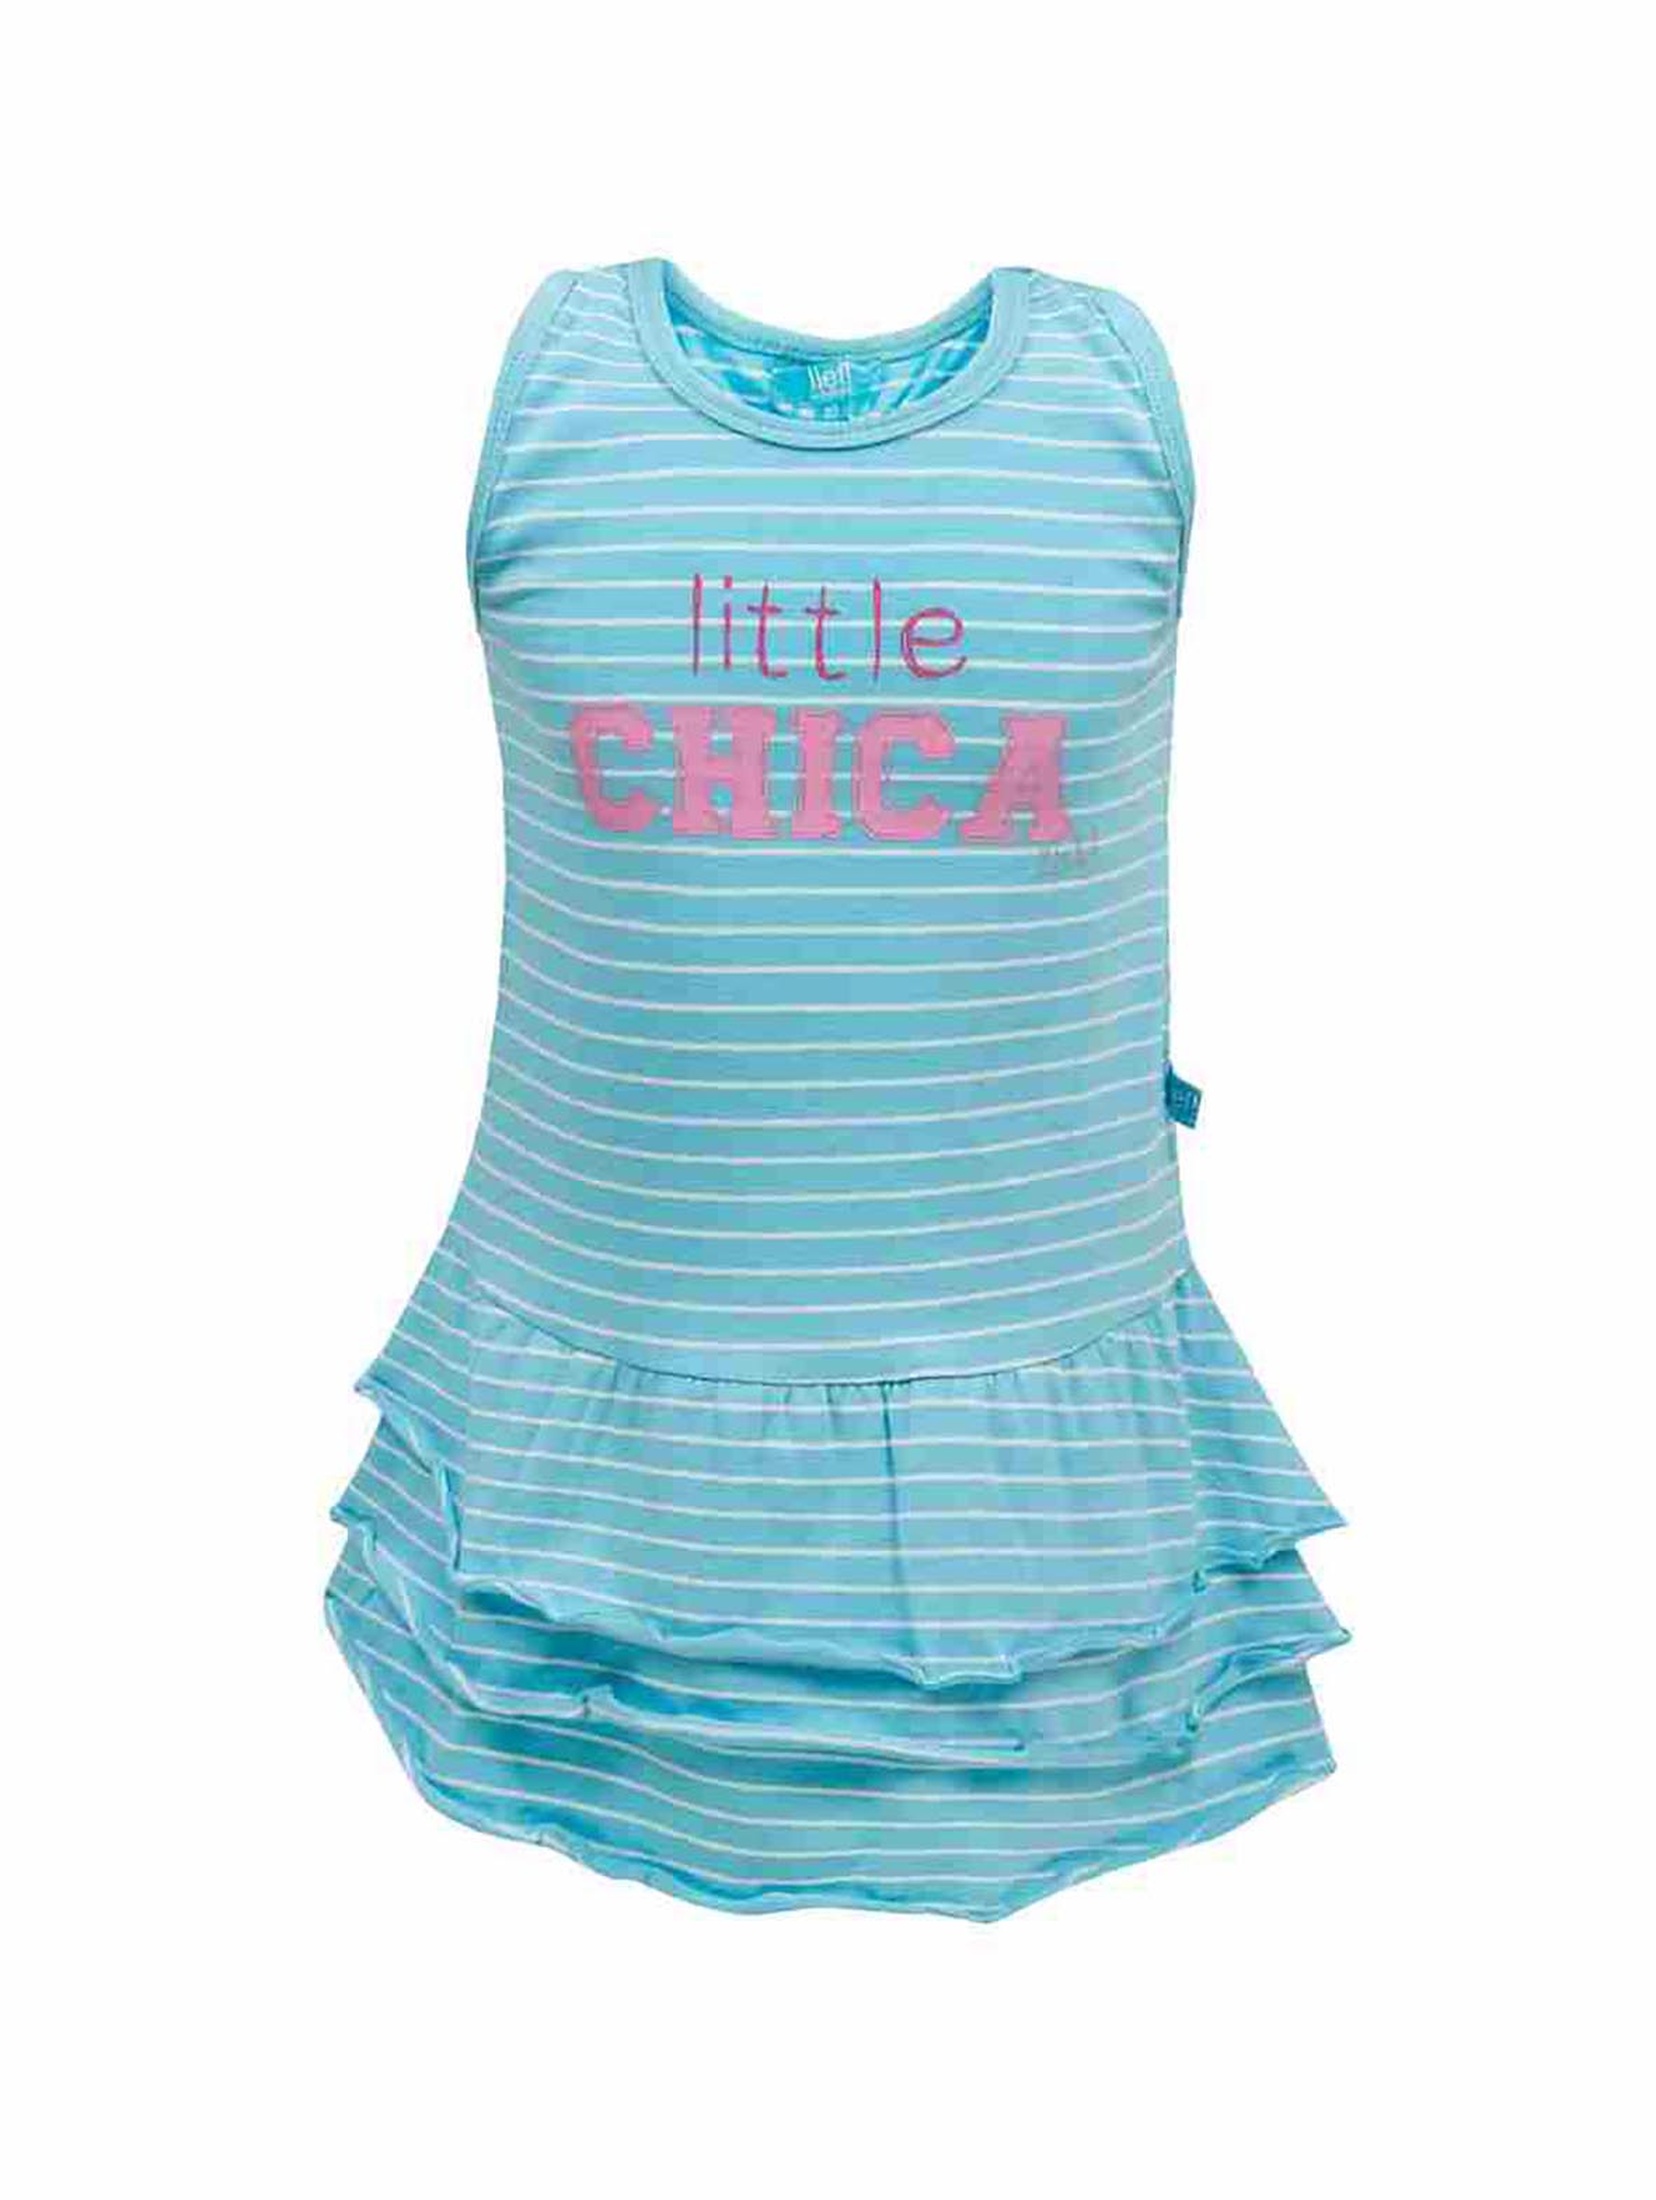 Sukienka dziewczęca na lato - niebiesko-biała - Little Chica - Lief